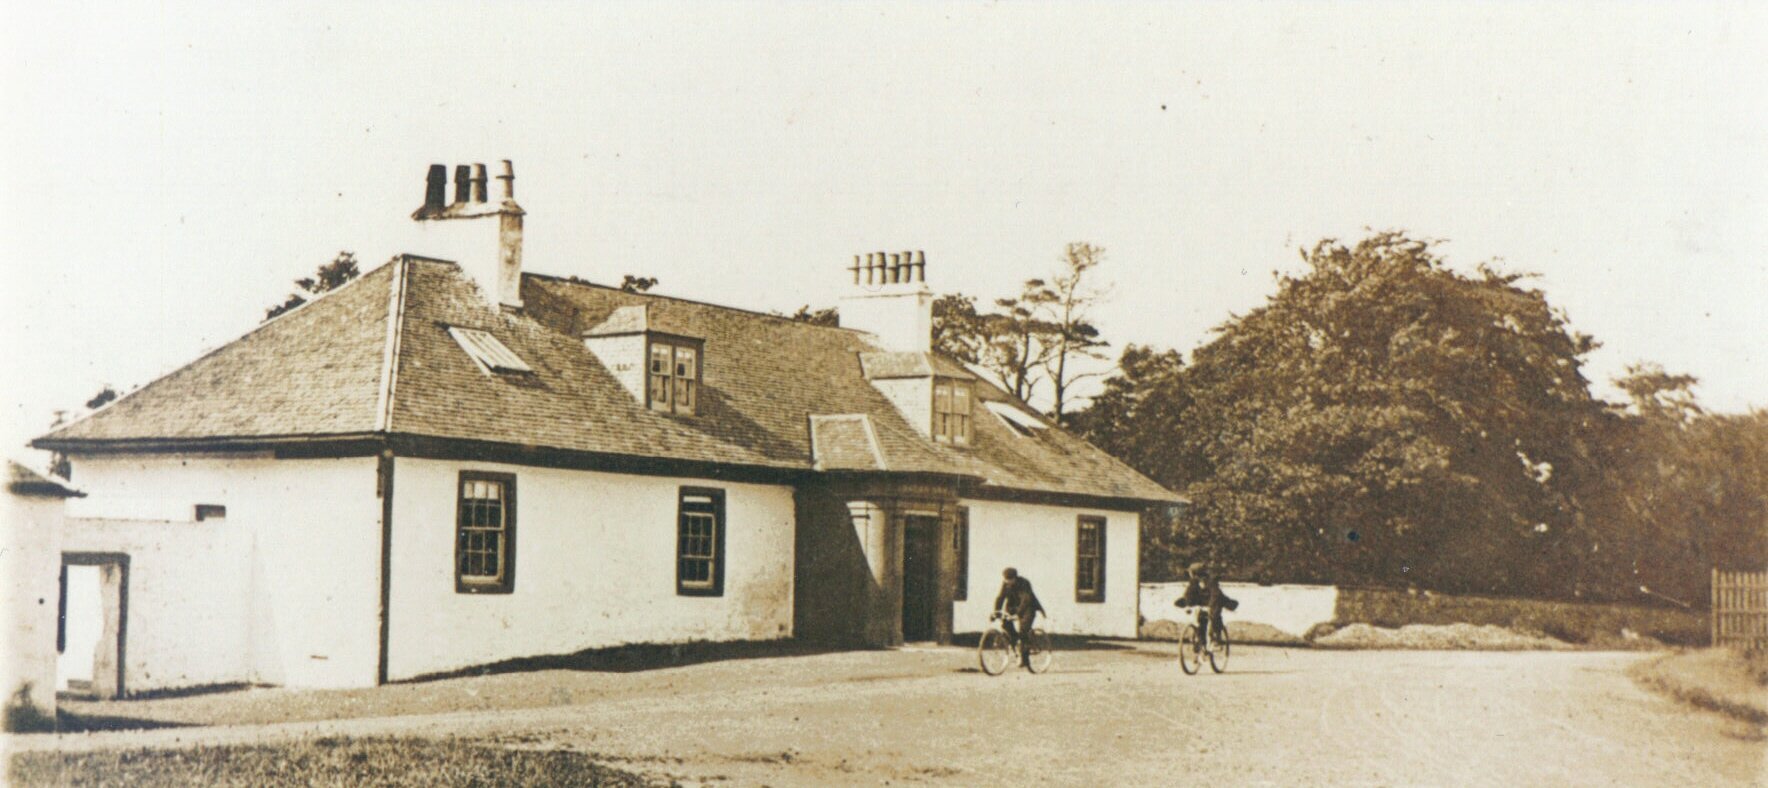 Fotografia czarno-biała przedstawiająca budynek Lugton Inn at Lugton, East Ayrshire,  w Szkocji. Przed domem dwóch rowerzystów. 